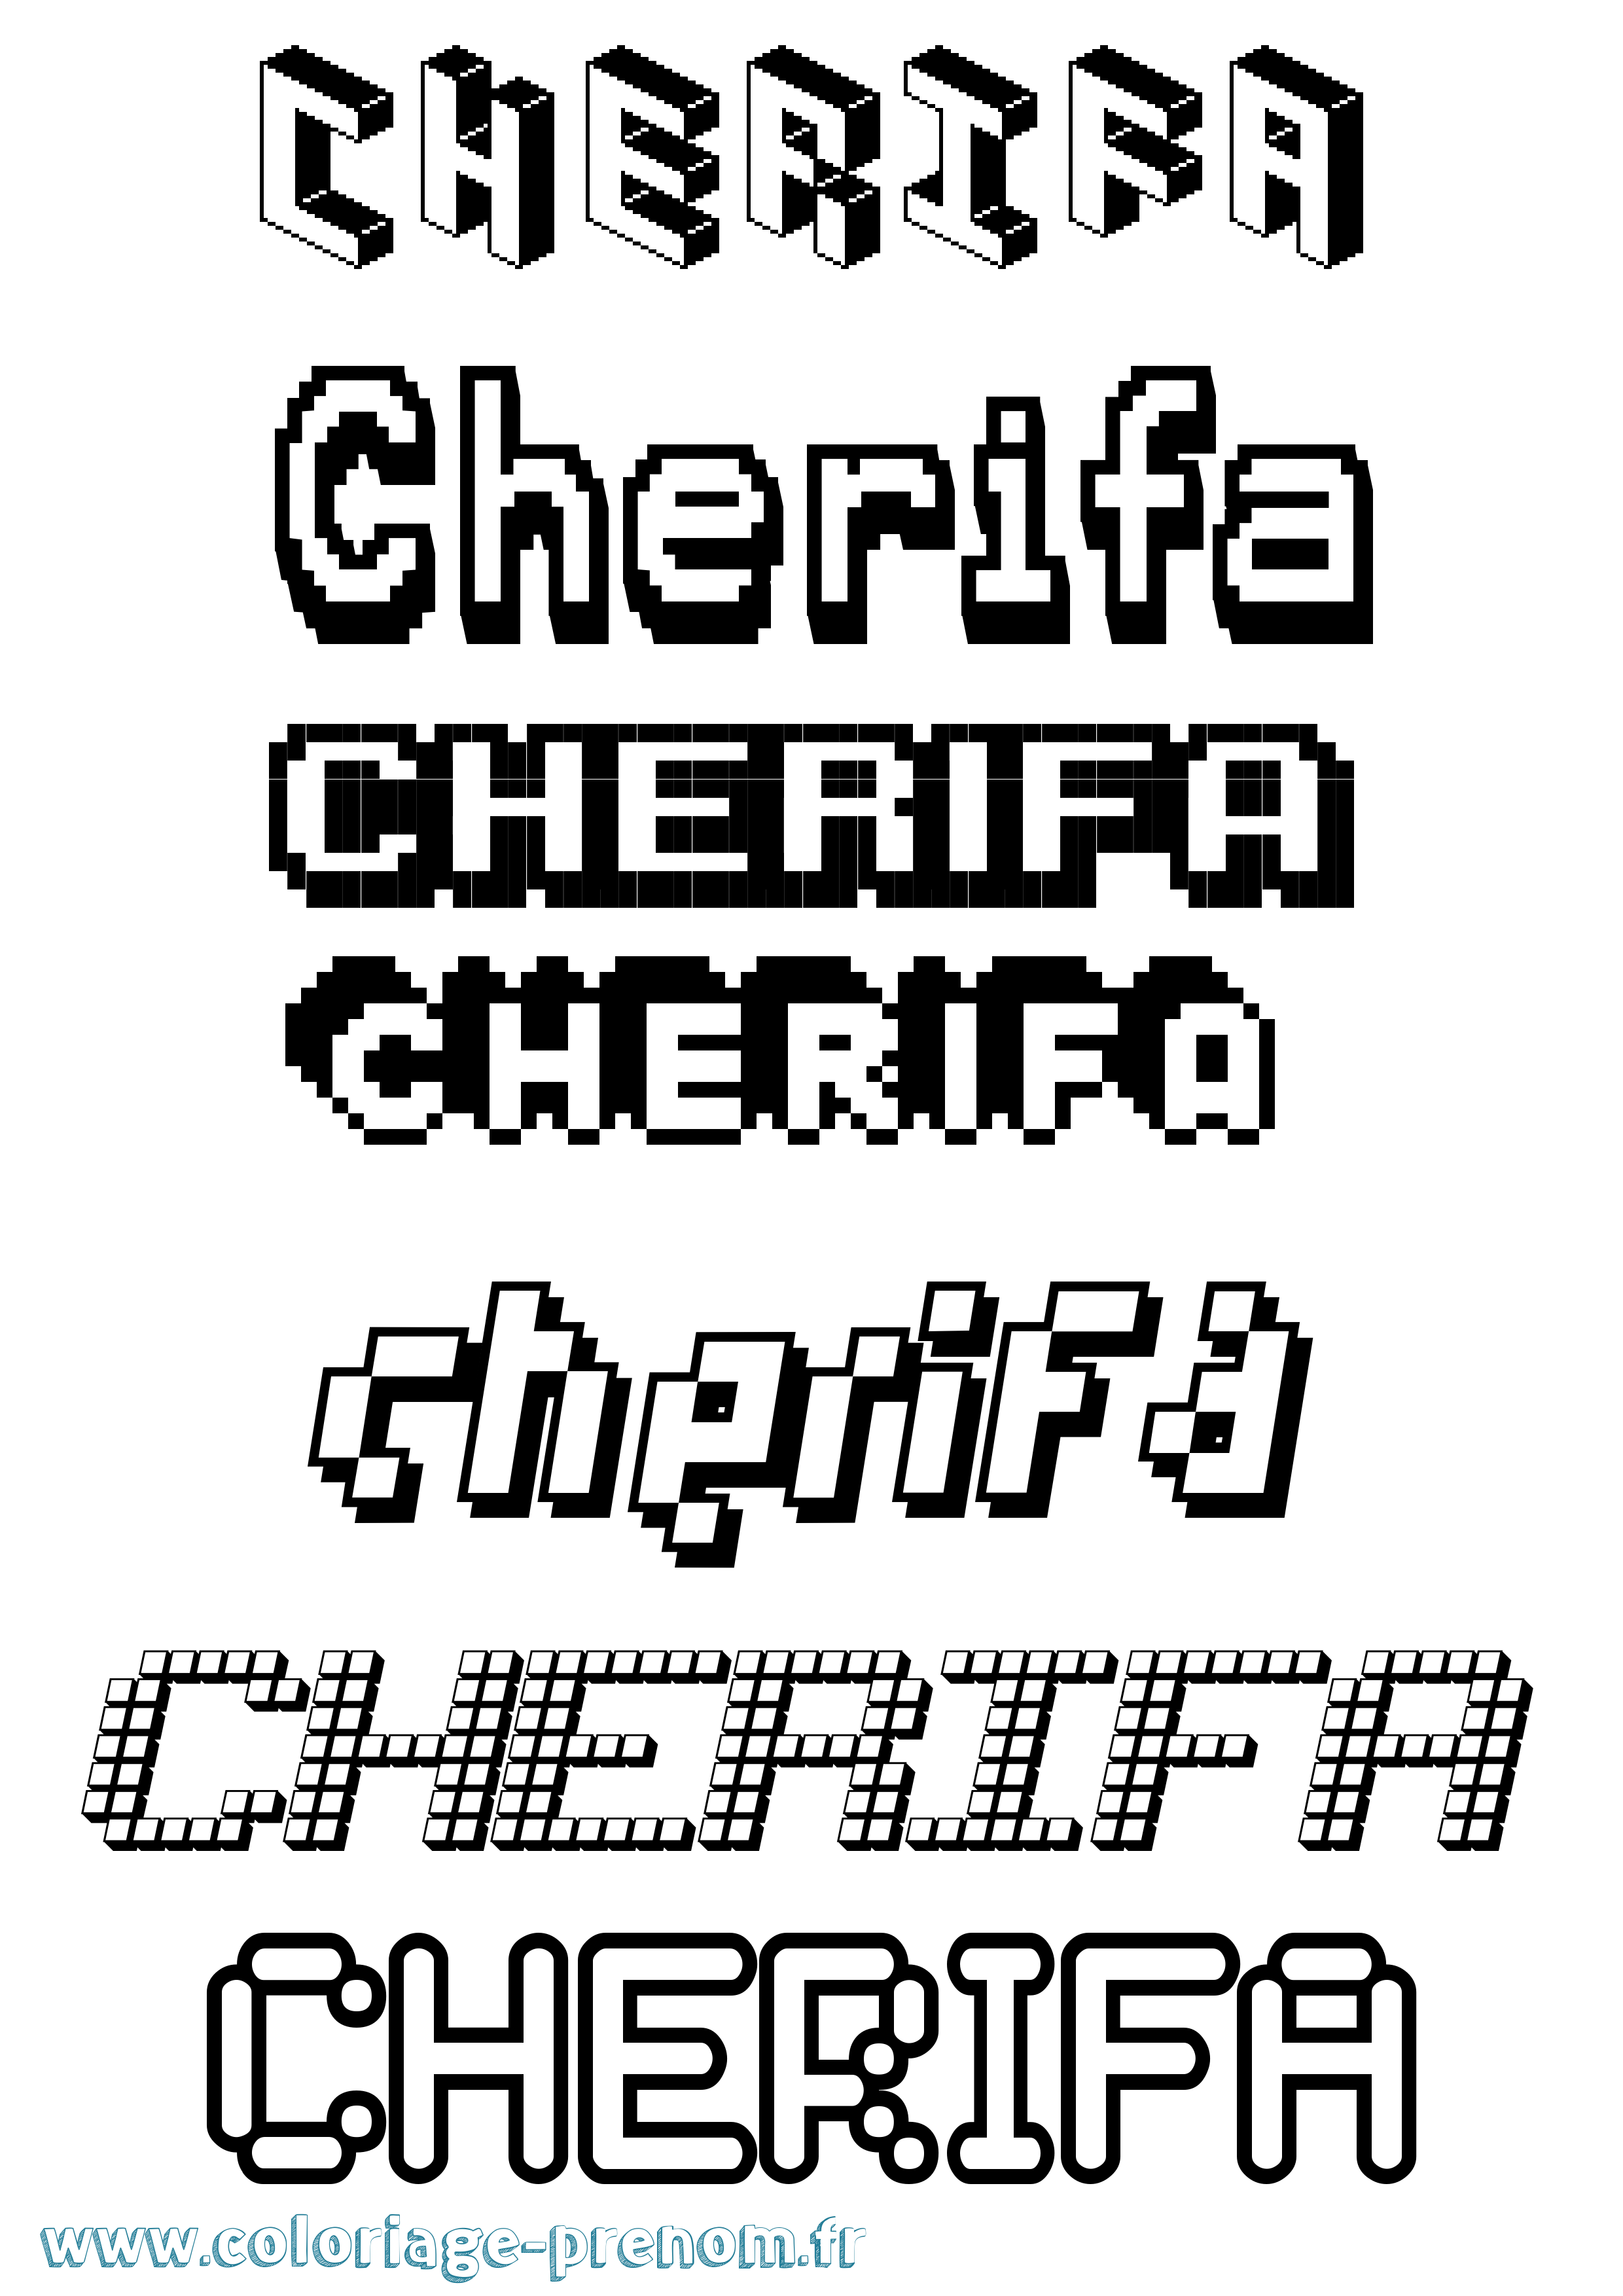 Coloriage prénom Cherifa Pixel